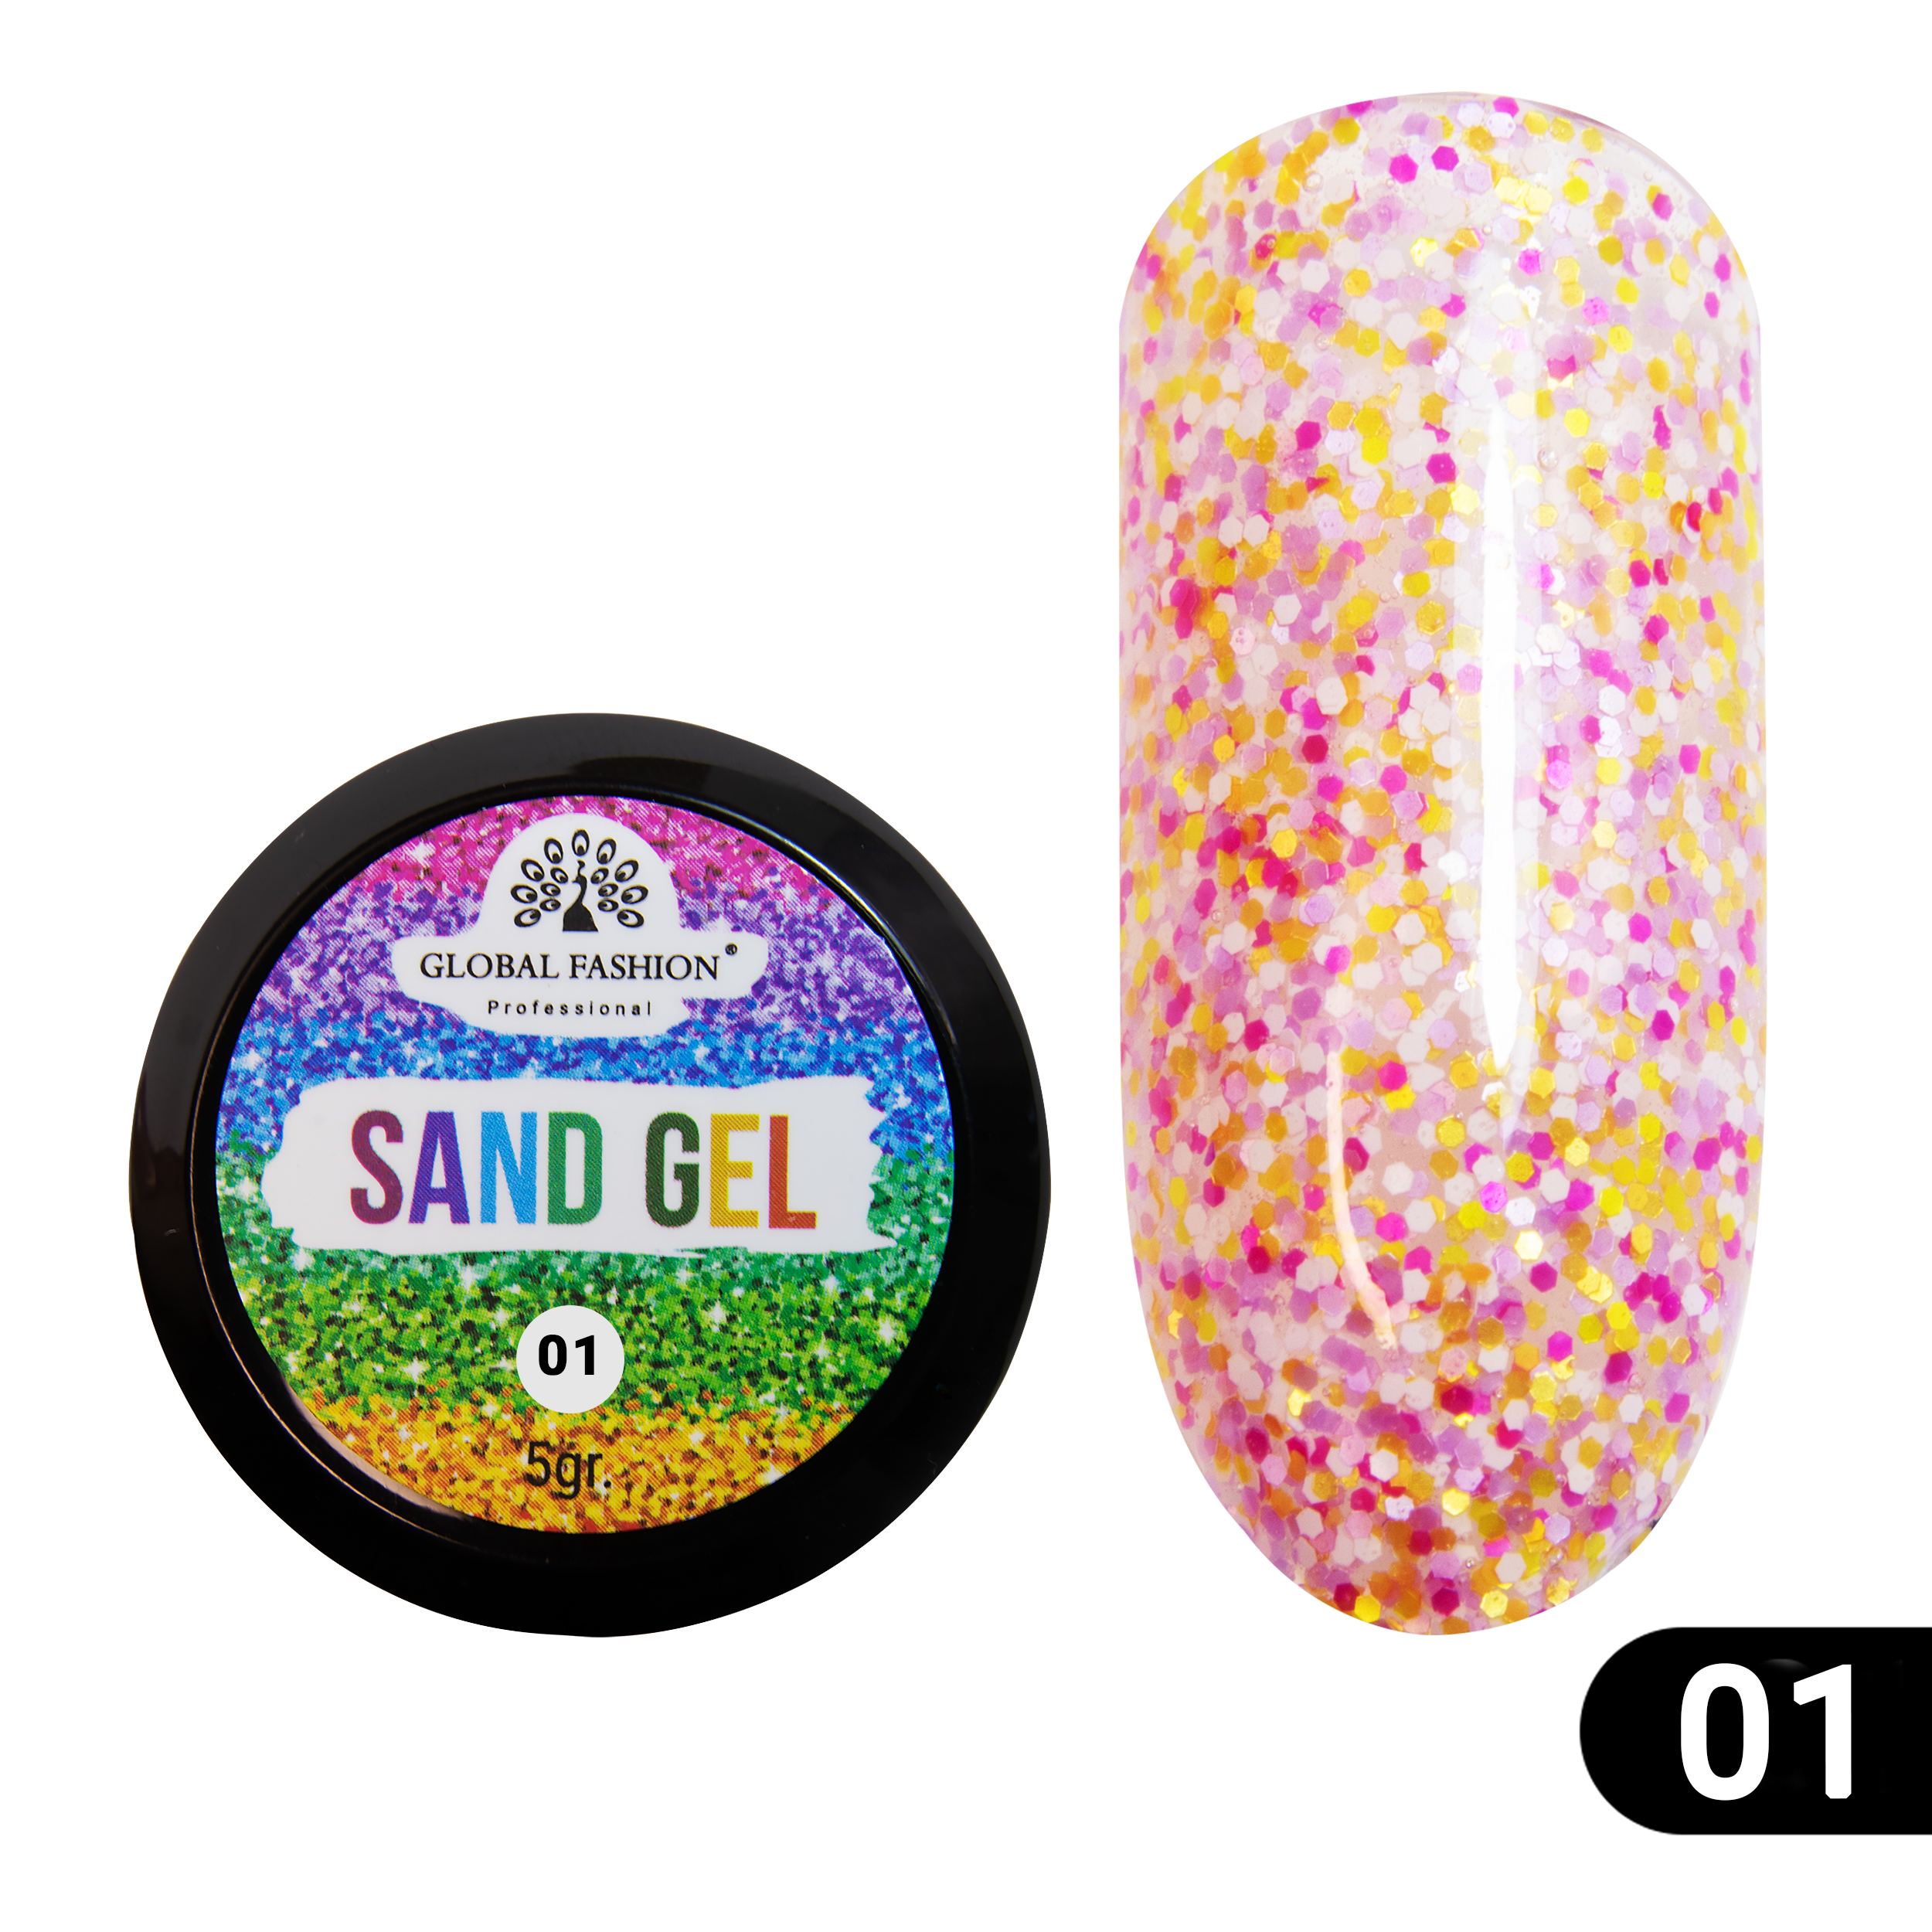 Гель-краска Sand gel Global Fashion 5 г 01 golden sand